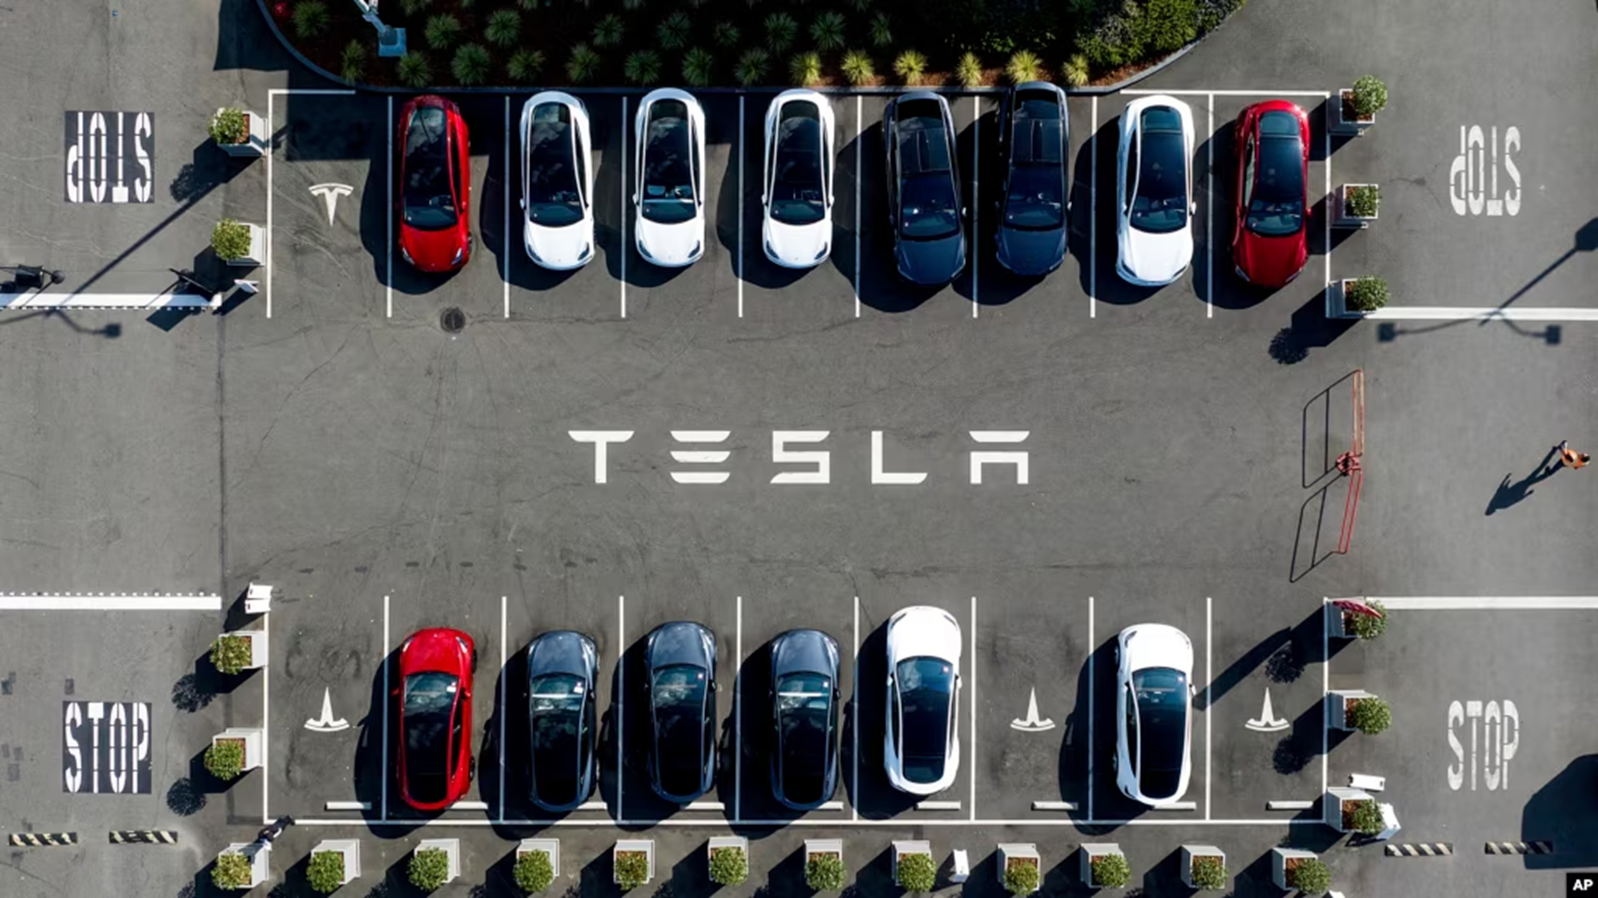 Tin riêng của Reuters: Tesla hủy dự án xe giá rẻ giữa lúc xe Trung Quốc cạnh tranh ác liệt